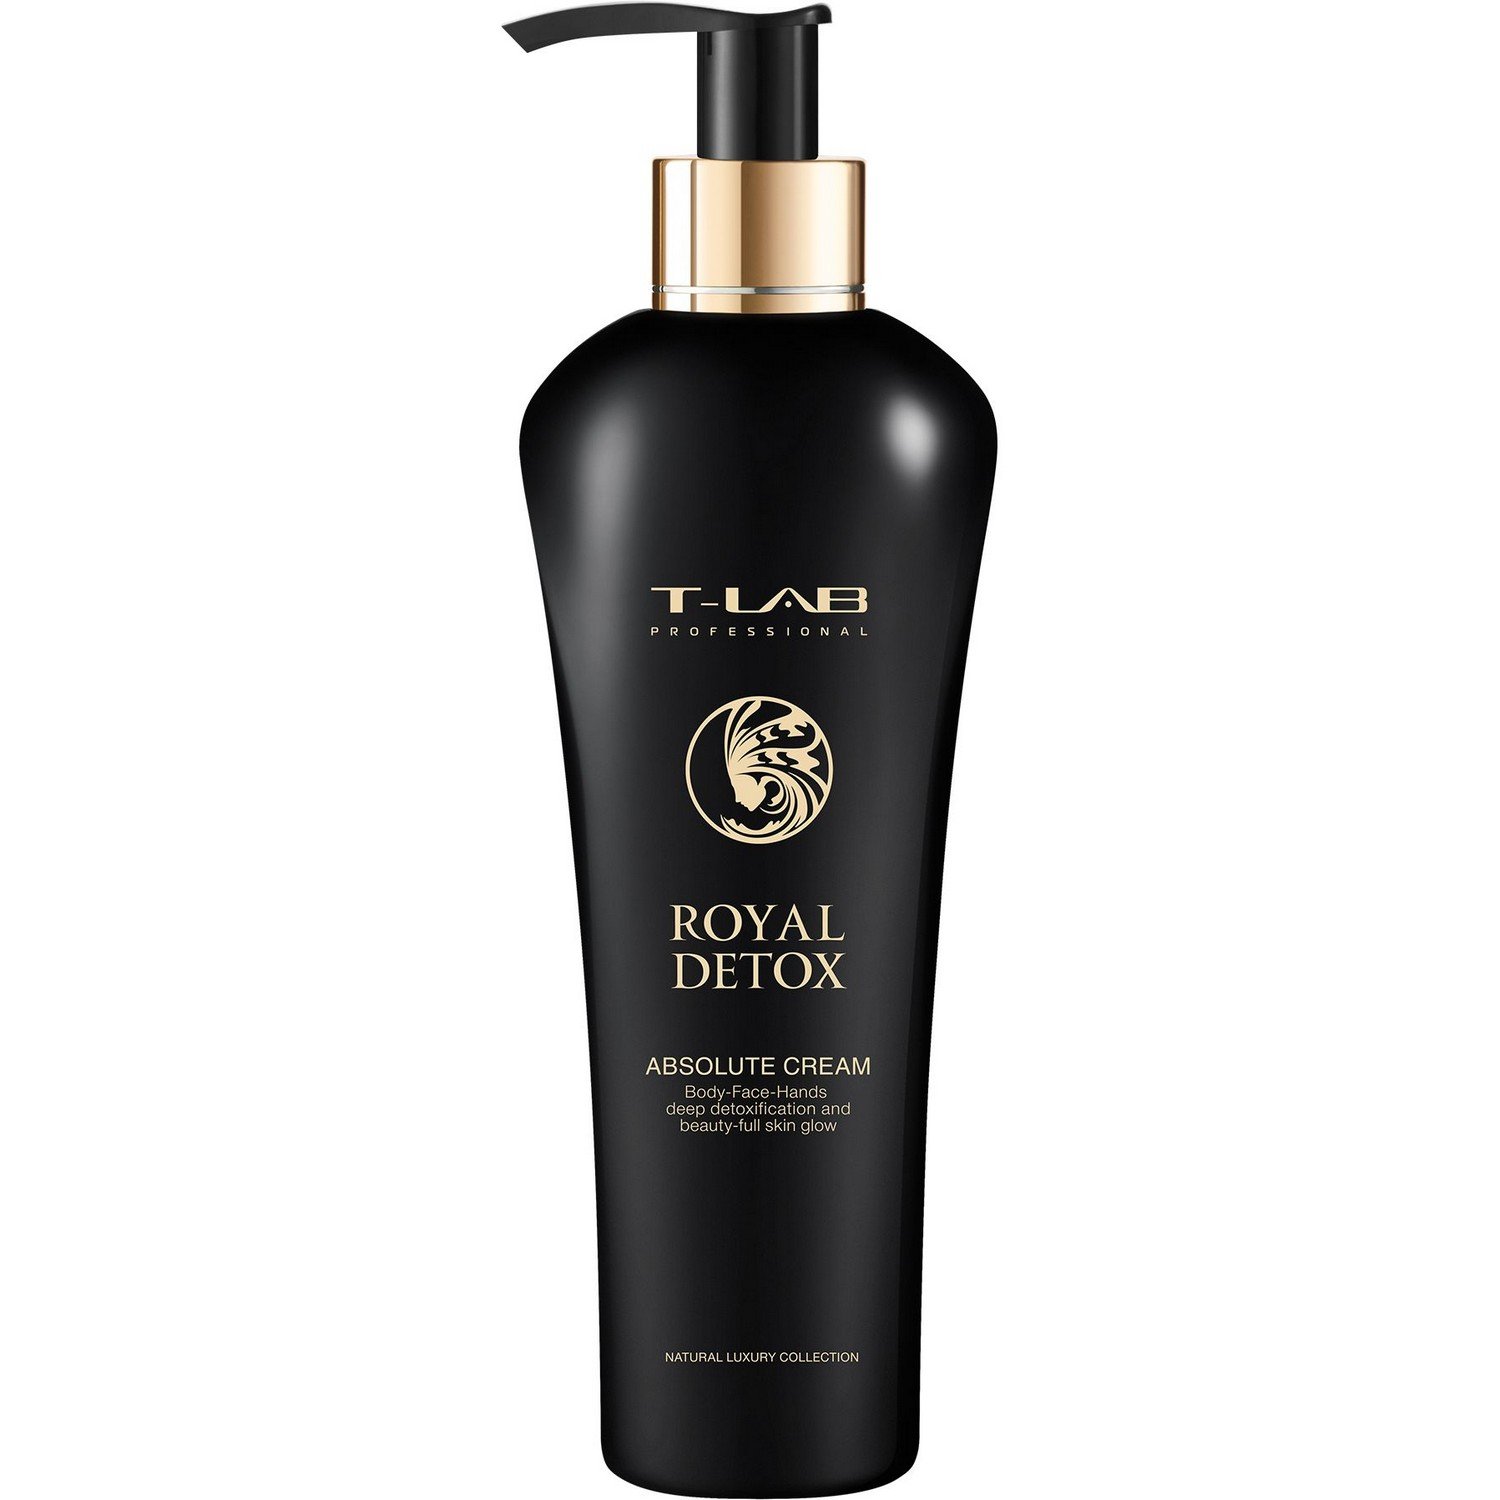 Крем T-LAB Professional Royal Detox Absolute Cream для королевской гладкости кожи и абсолютной детоксикации, 300 мл - фото 1